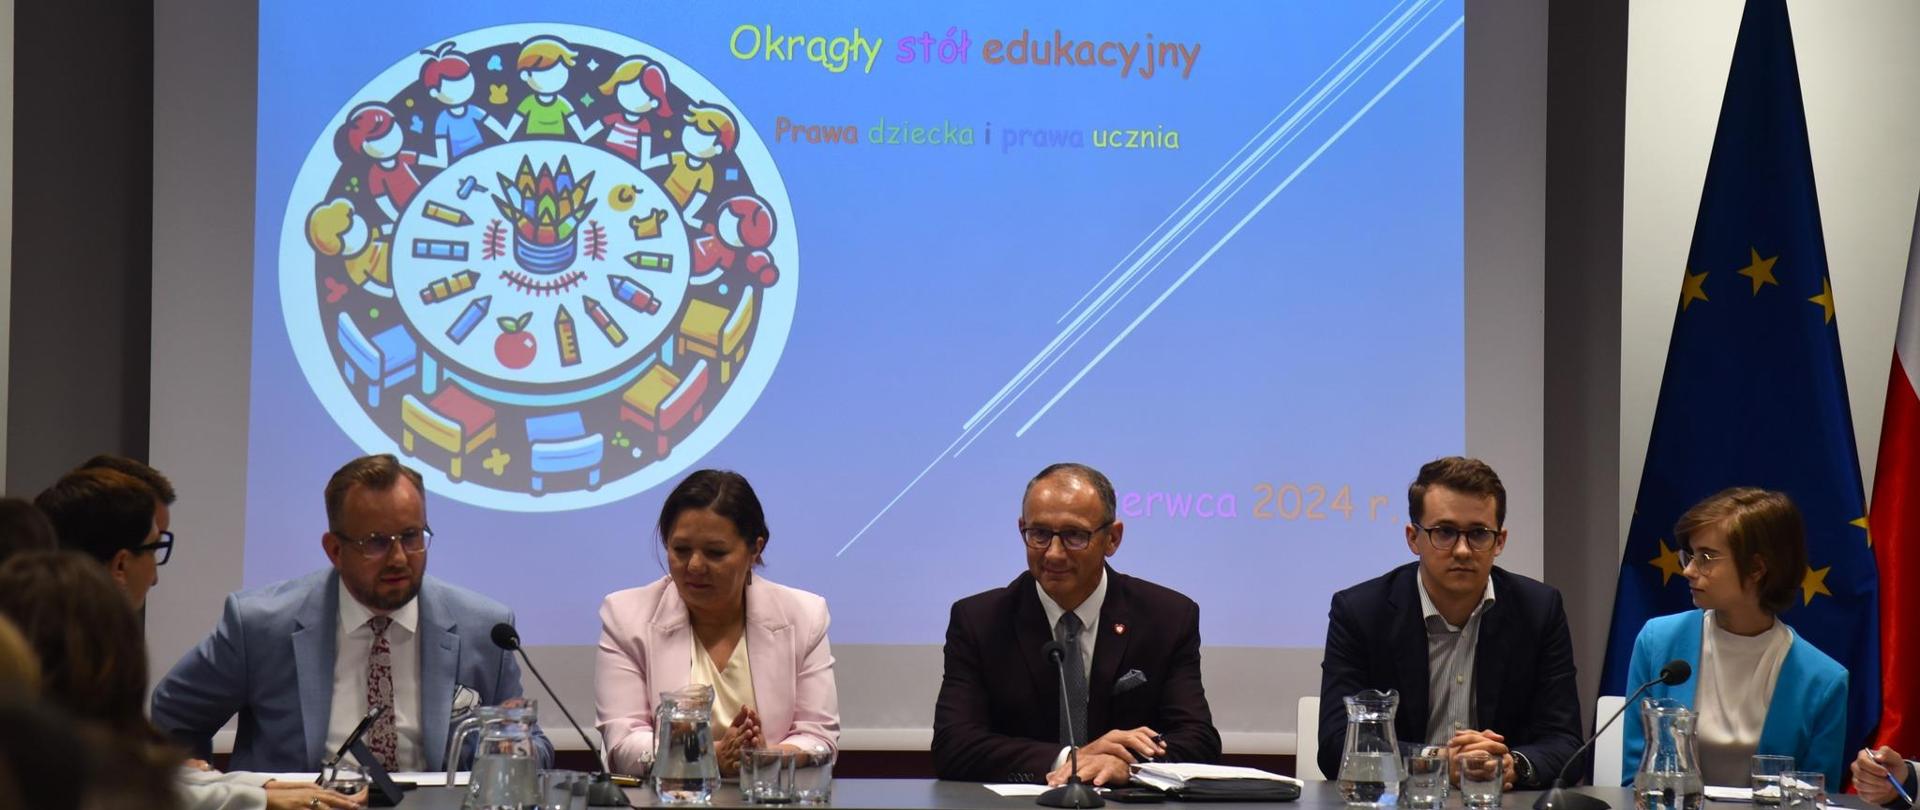 Na tle wielkiego ekranu z napisem „Okrągły stół o prawach dziecka i prawach ucznia” siedzi grupa osób, w śród nich wiceminister Izabela Ziętka.